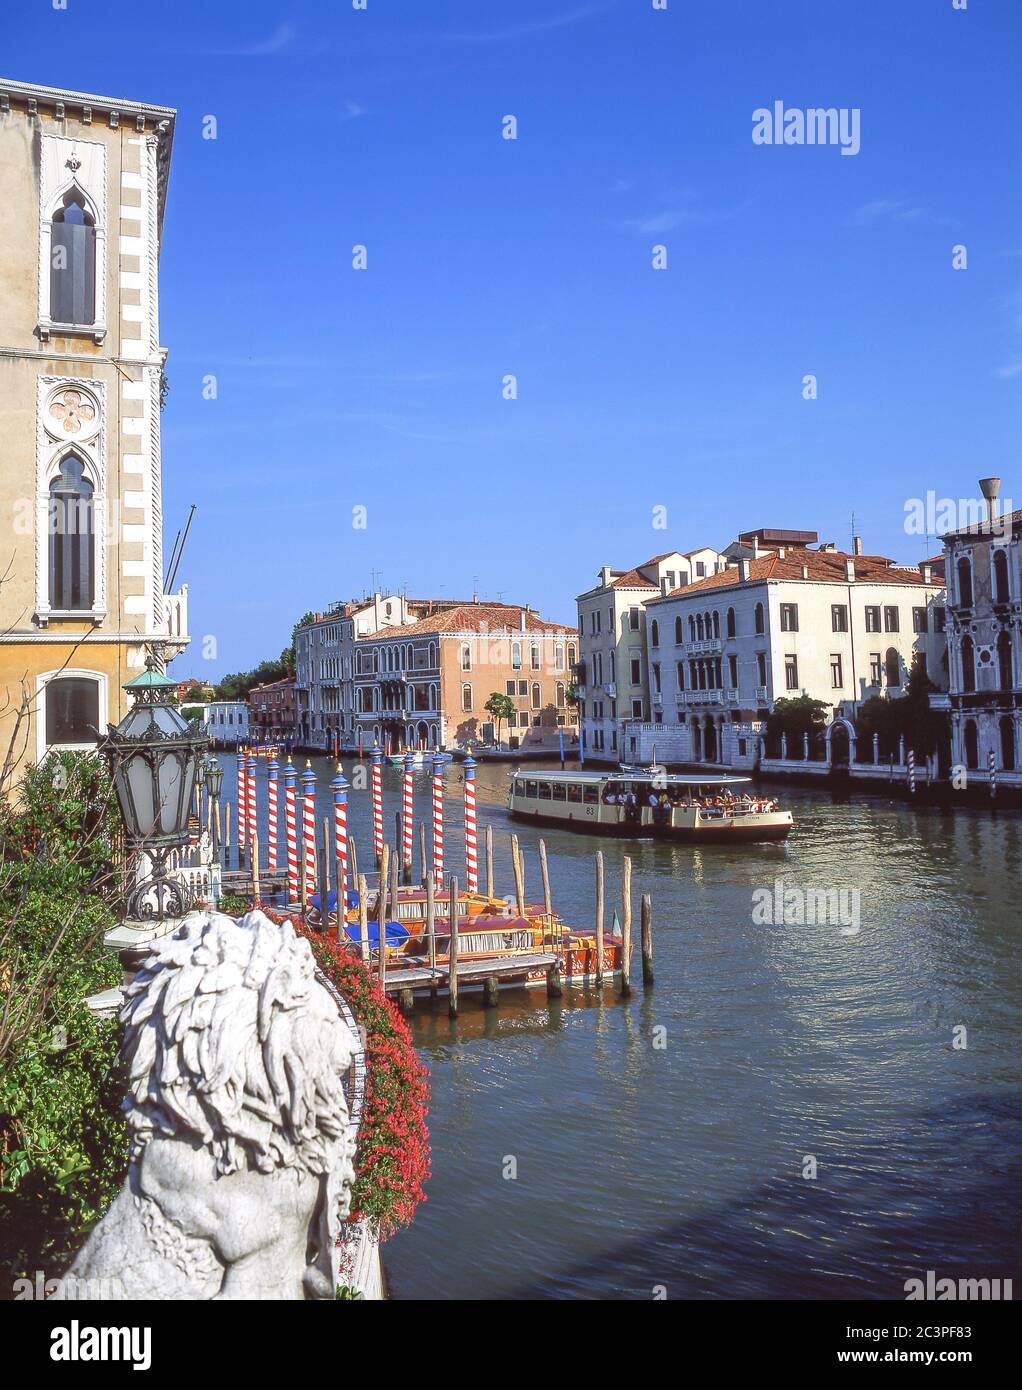 Canal Grande da Ponte dell'Accademia, Venezia (Venezia), Veneto, Italia Foto Stock